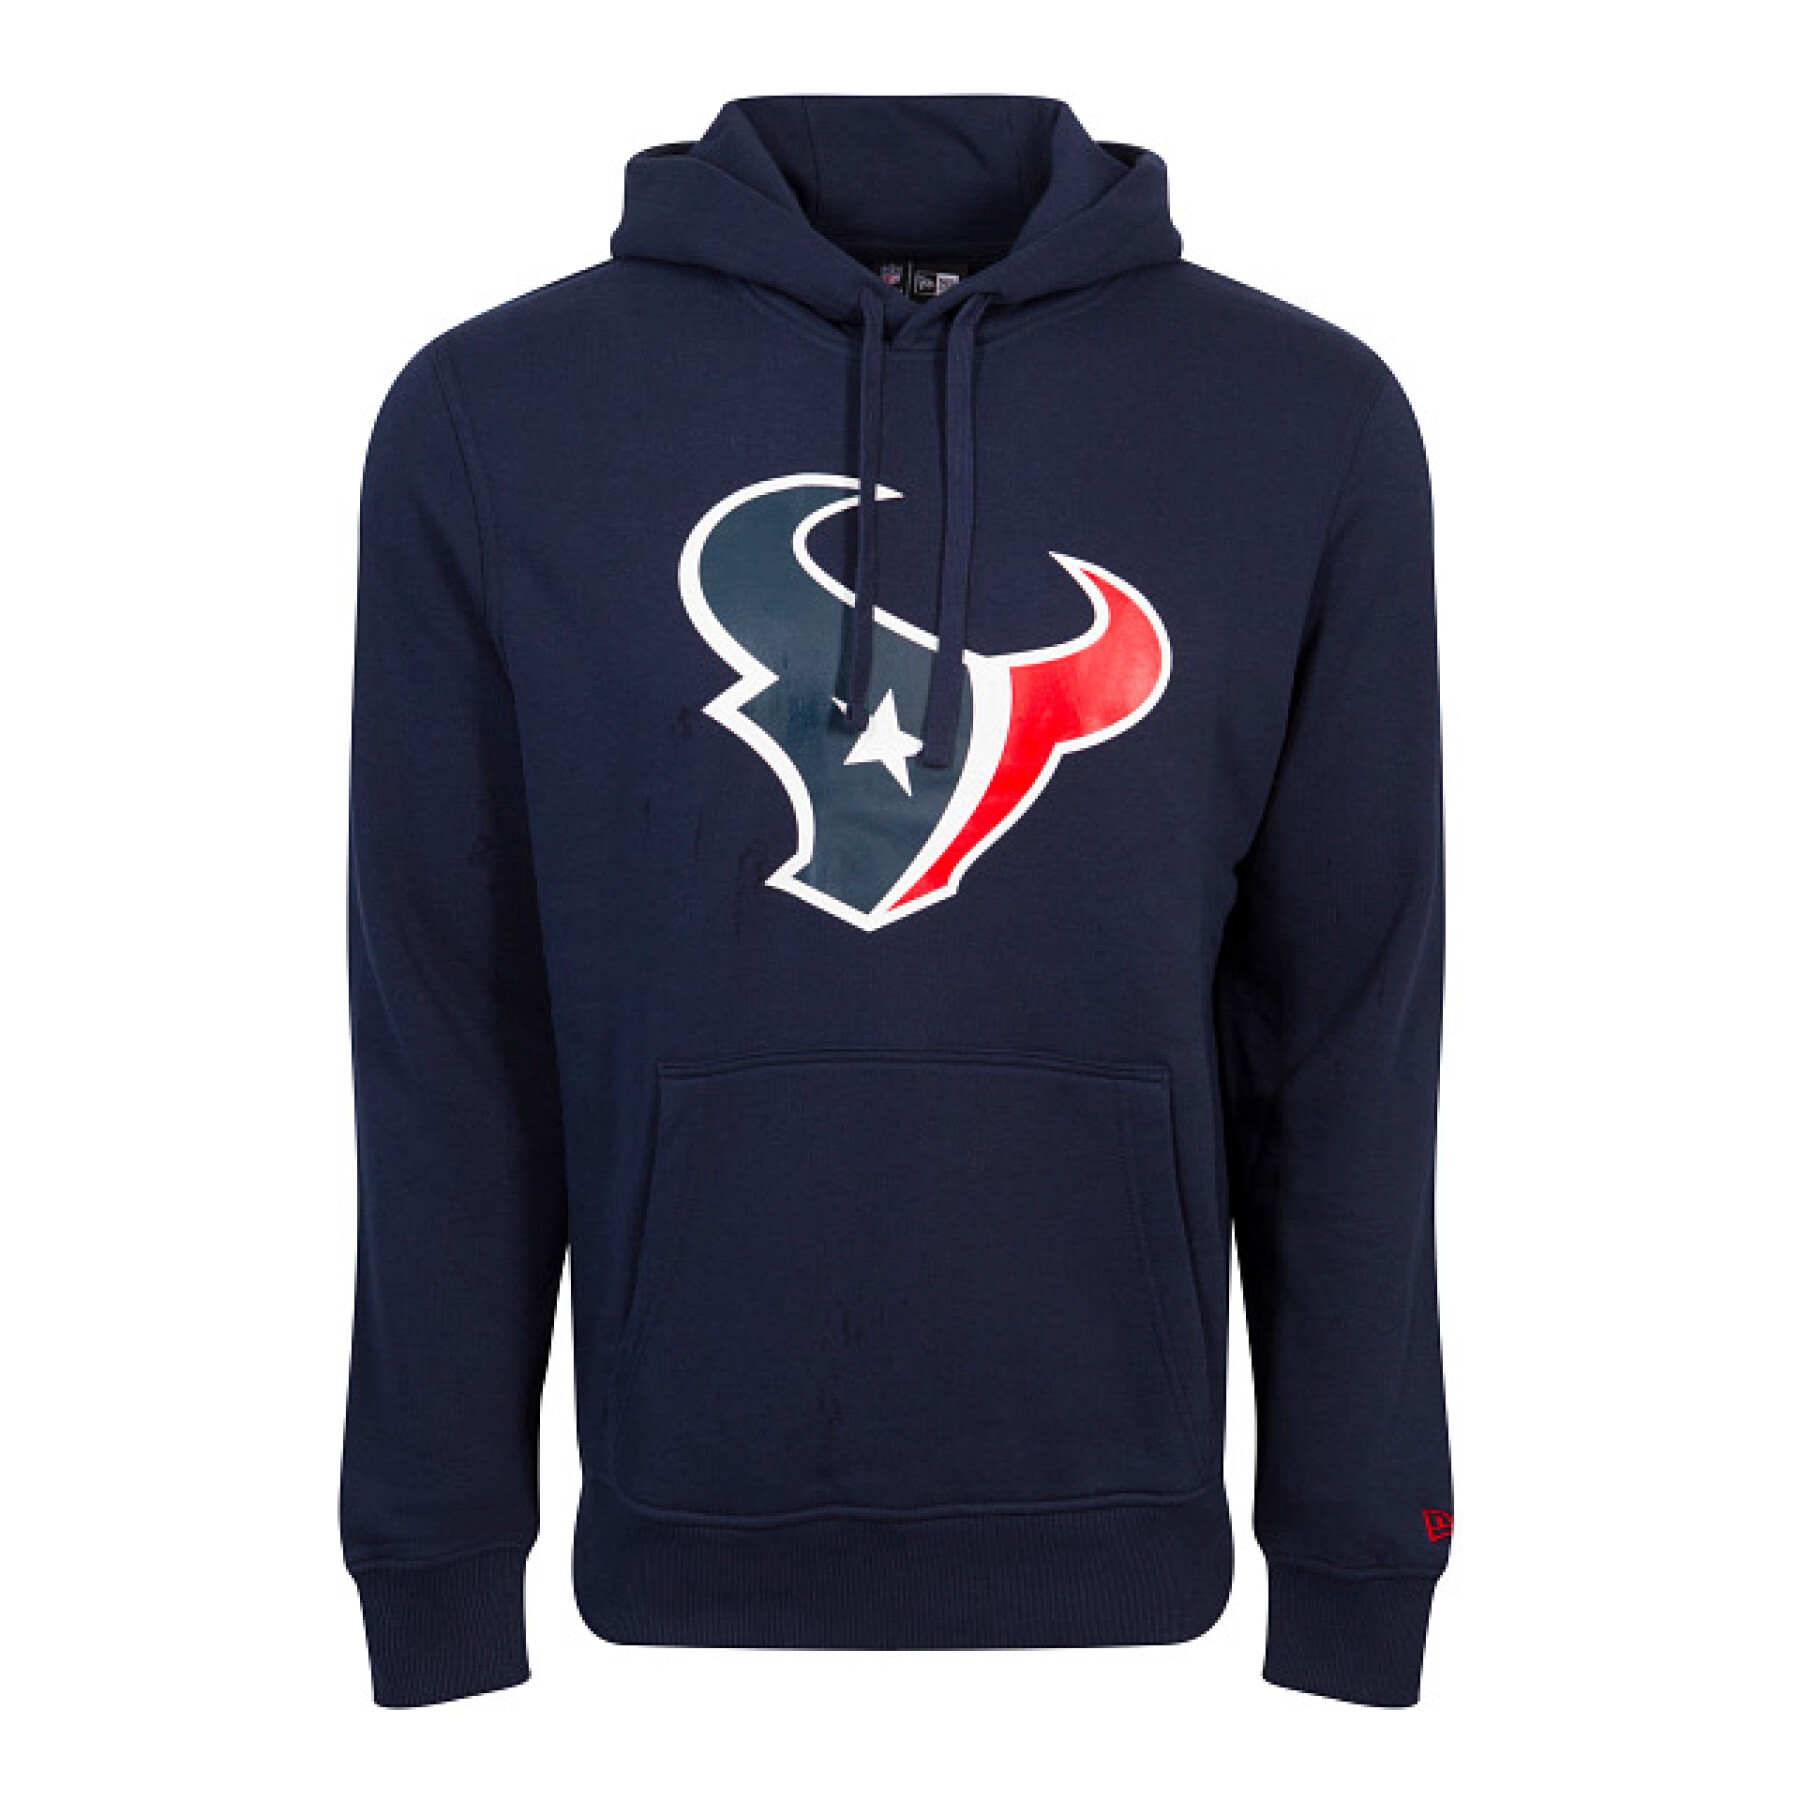 Sweatshirt à capuche Houston Texans NFL